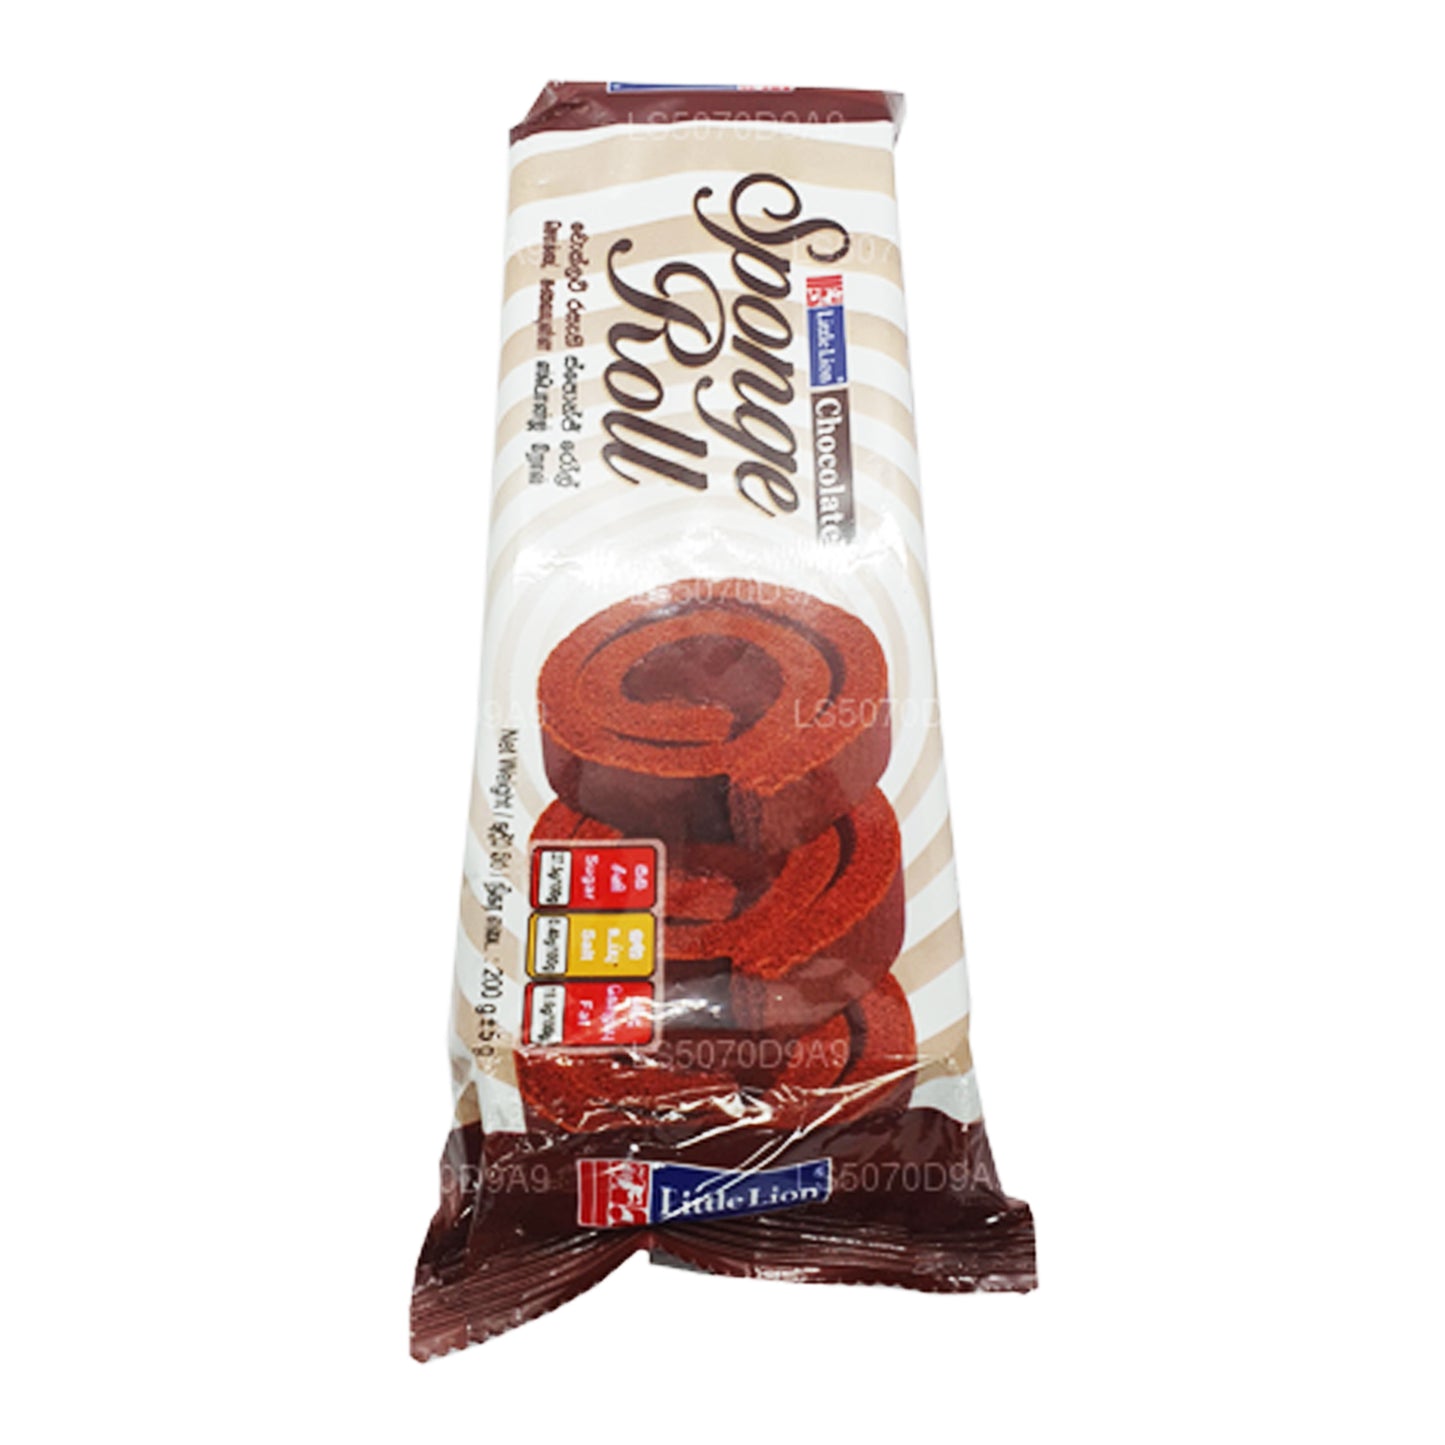 Küçük Aslan Sünger Rulo Çikolata (200g)